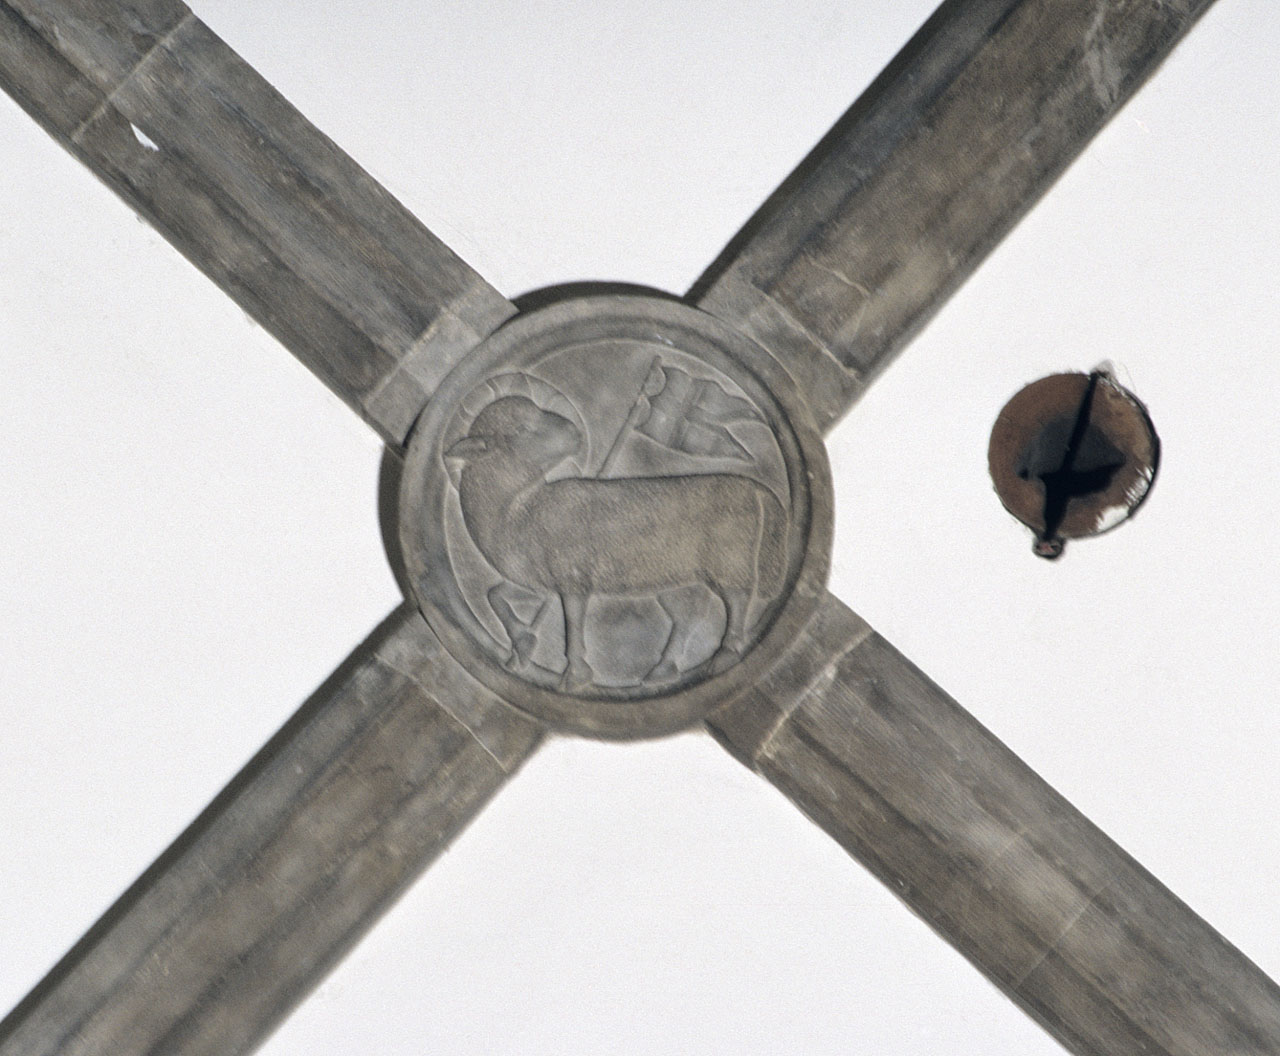 Stemma dell'Arte della Lana (rilievo) di Andrea Pisano (attribuito) (sec. XIV)